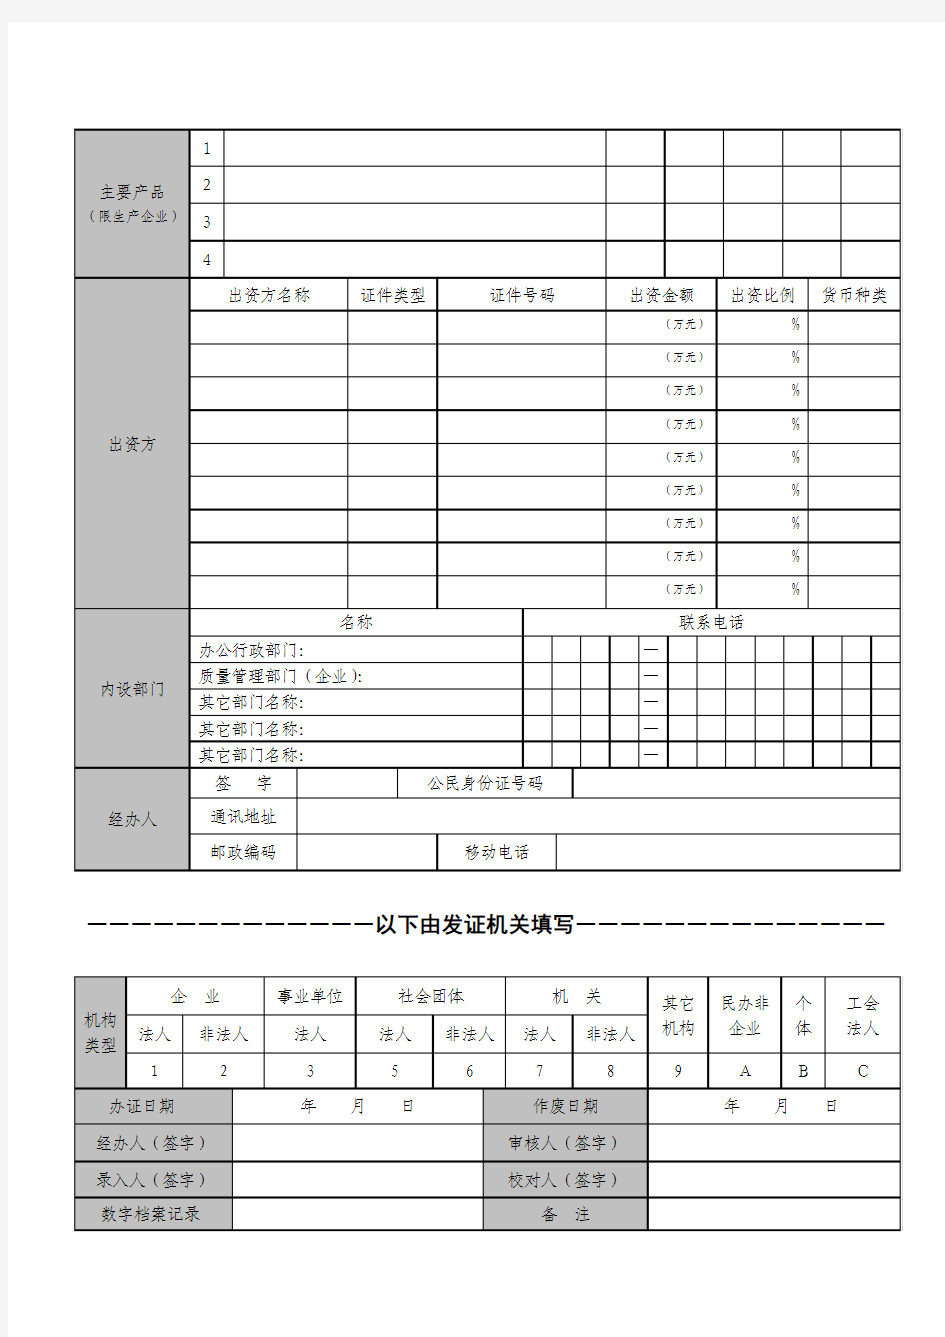 中华人民共和国组织机构代码证基本信息登记表